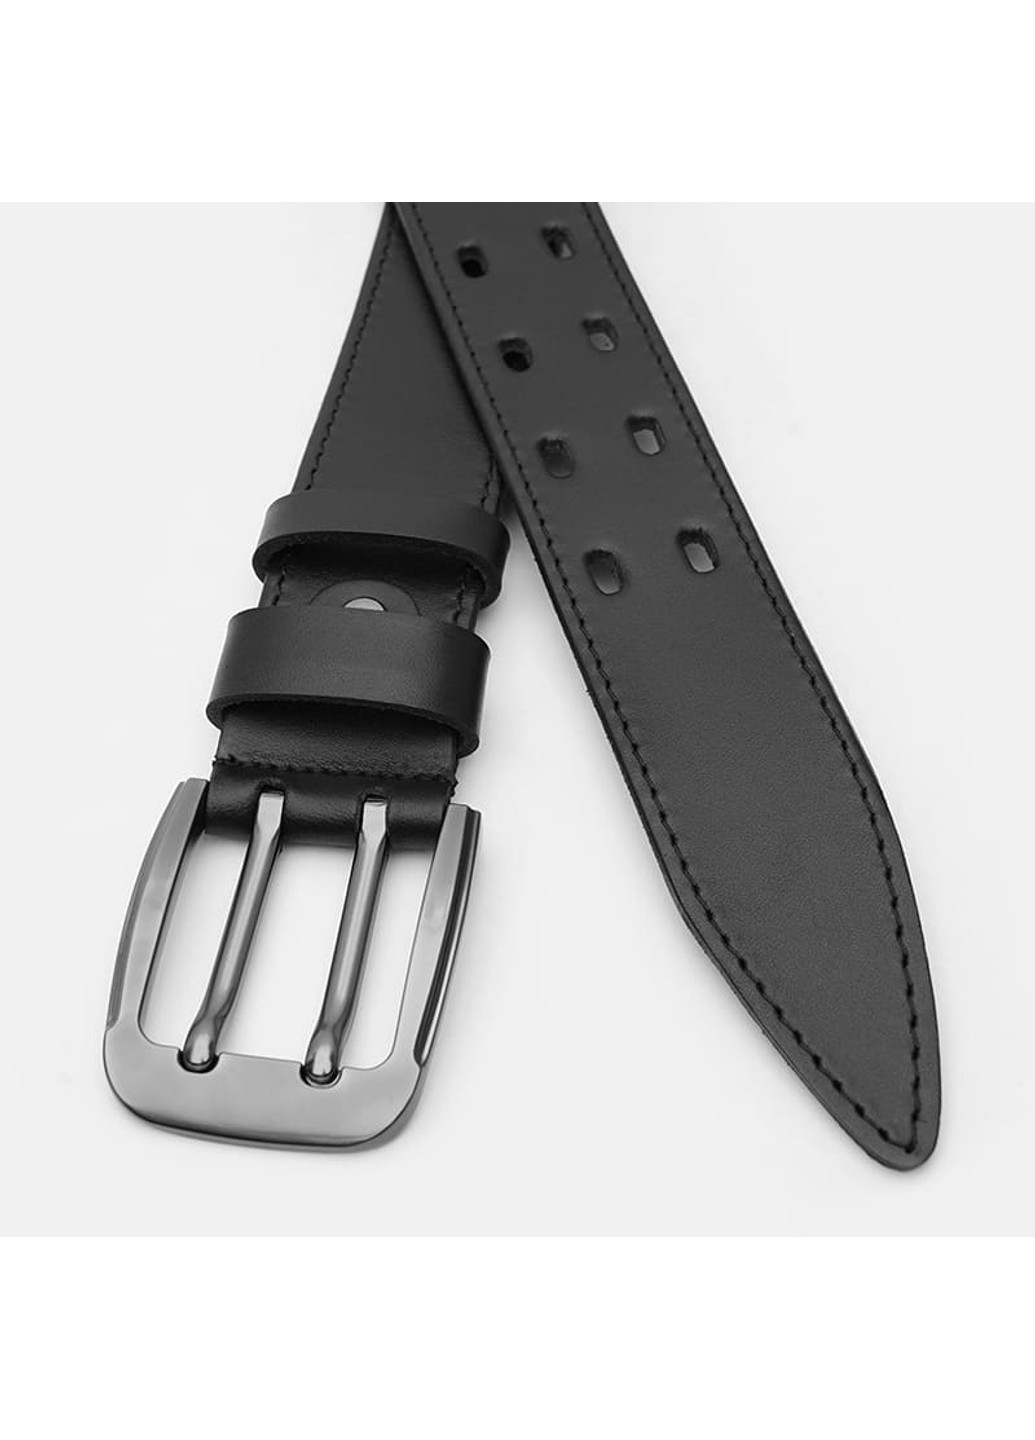 Мужской кожаный ремень V1125FX25-black Borsa Leather (271665072)